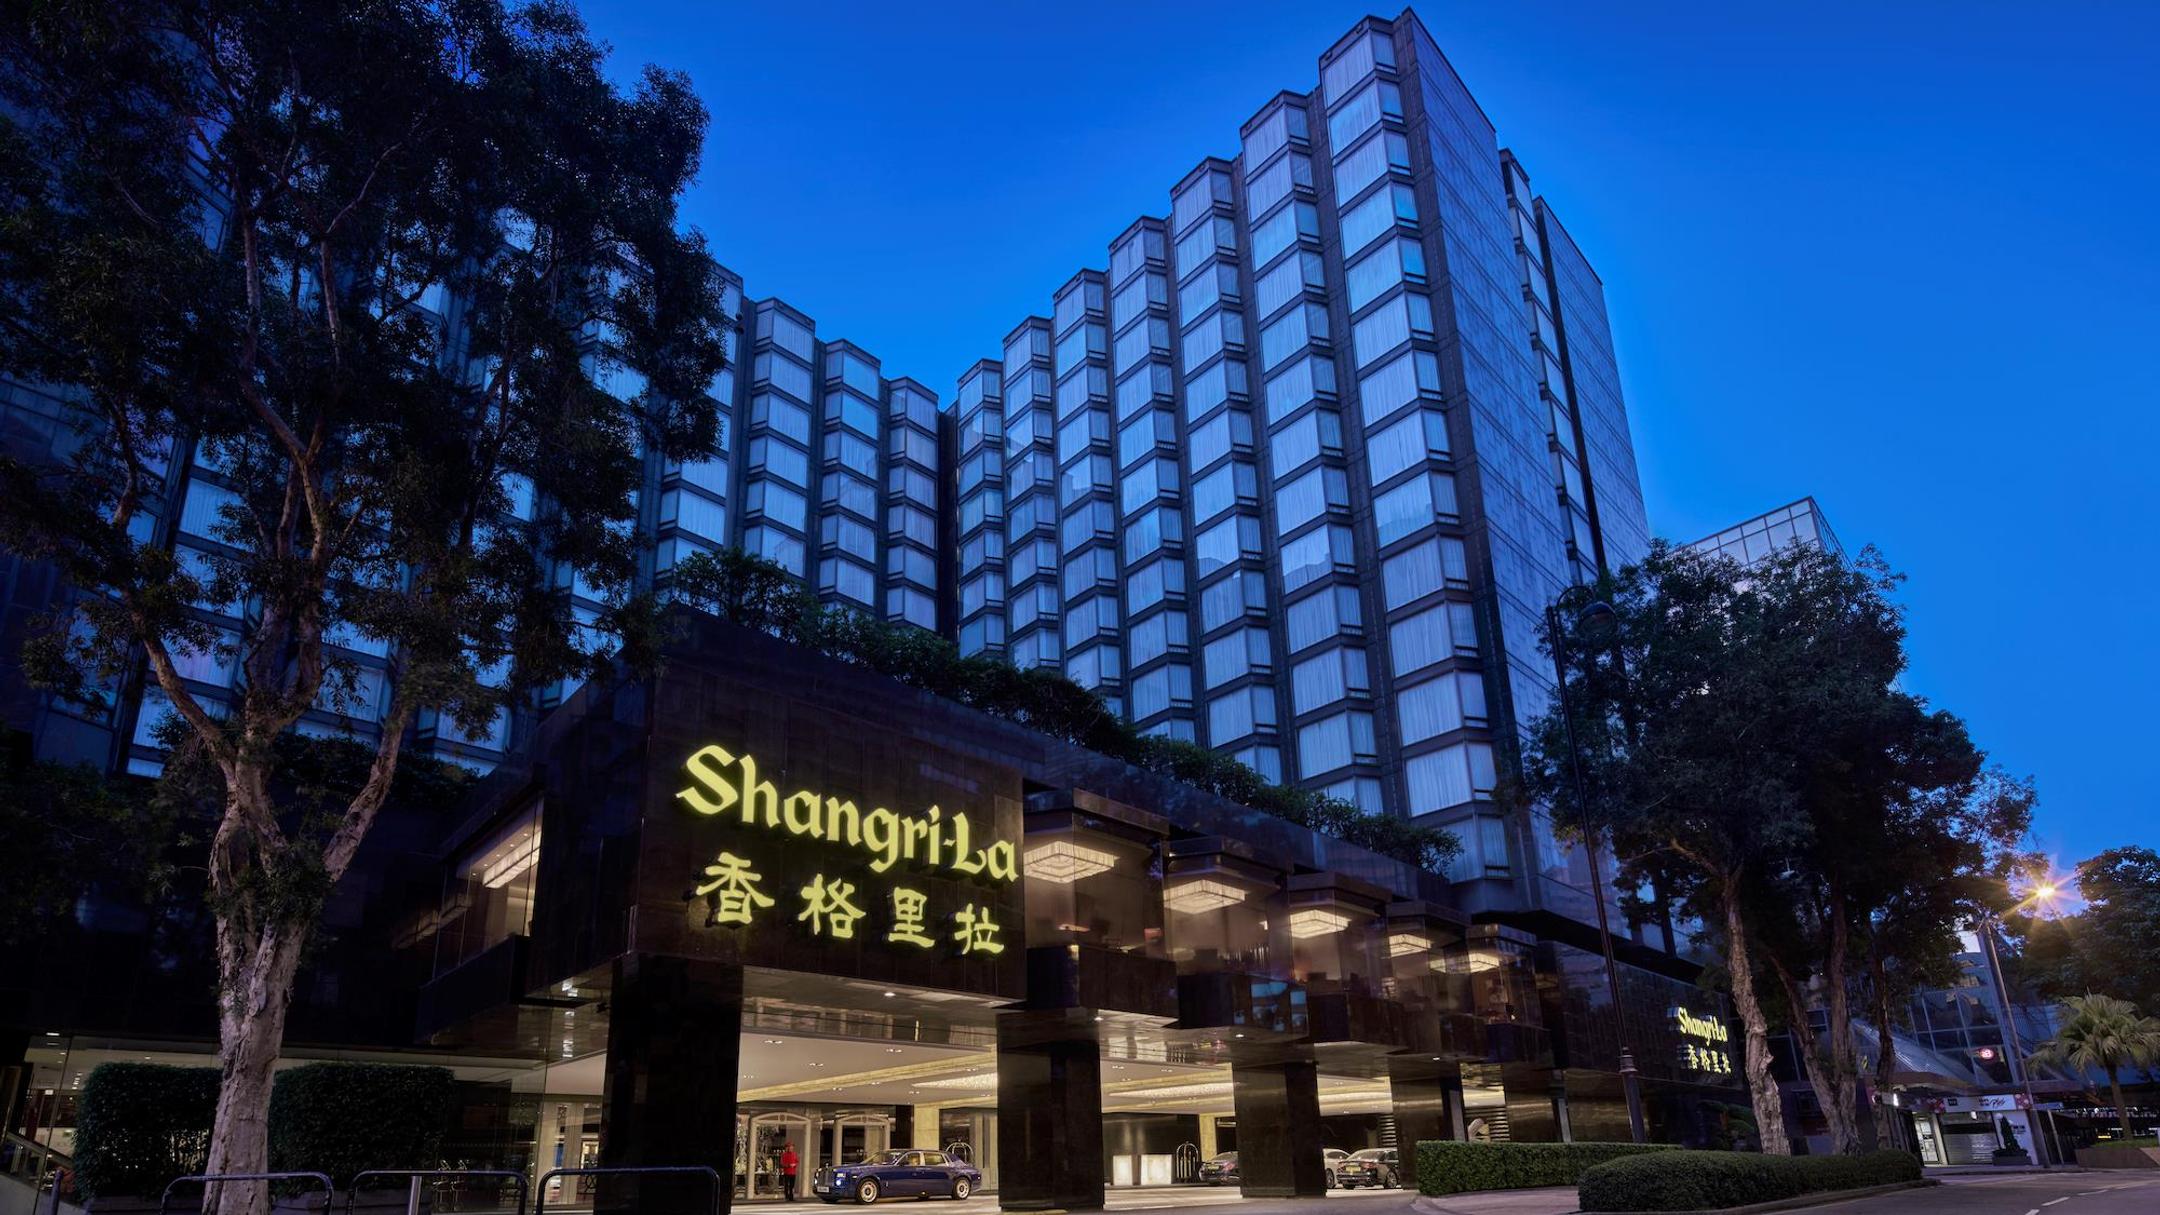 【旅居香港】#14 港島香格里拉大酒店 Island Shangri-La Hong Kong – dittou